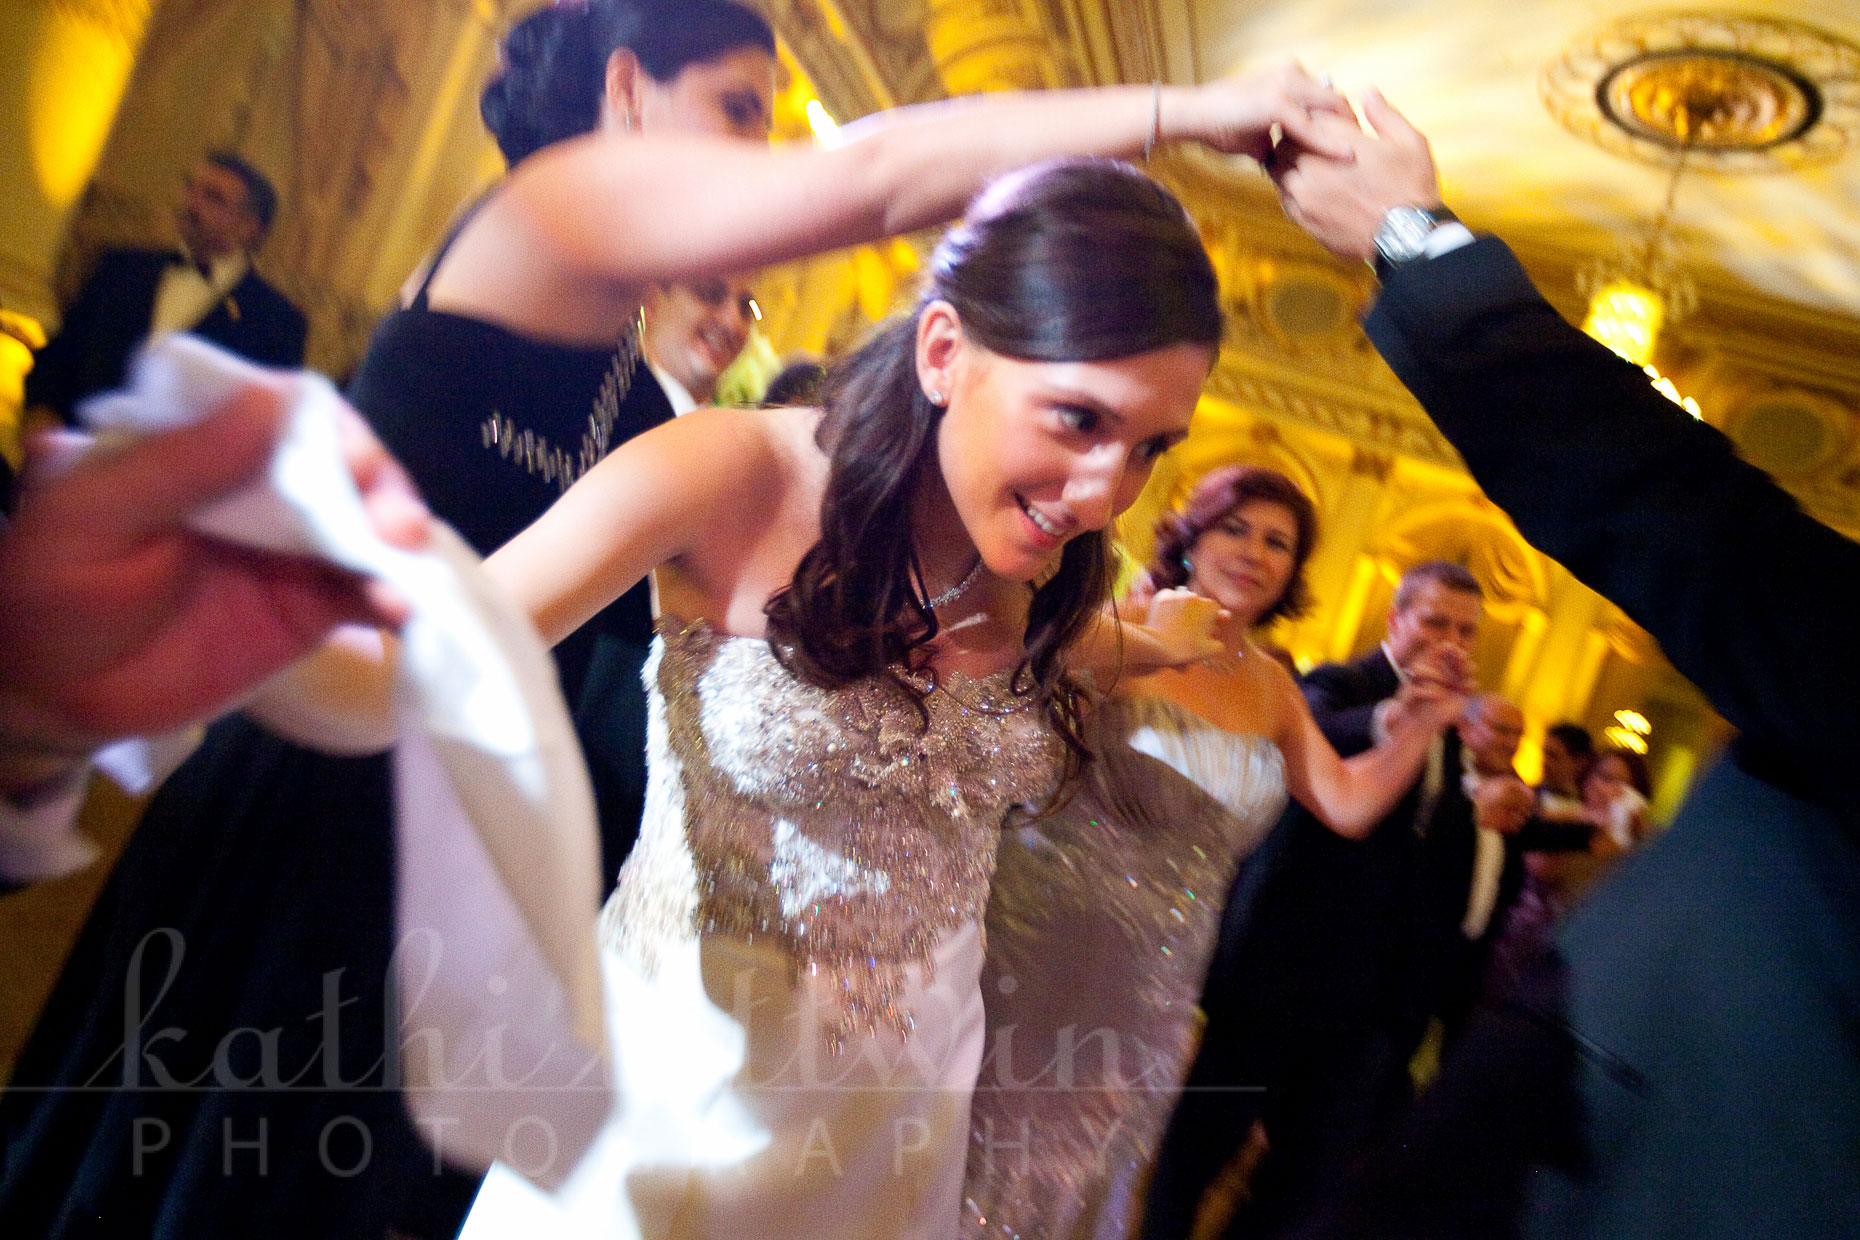 Kathi_Littwin_Photography_Plaza_NYC_Wedding-2084